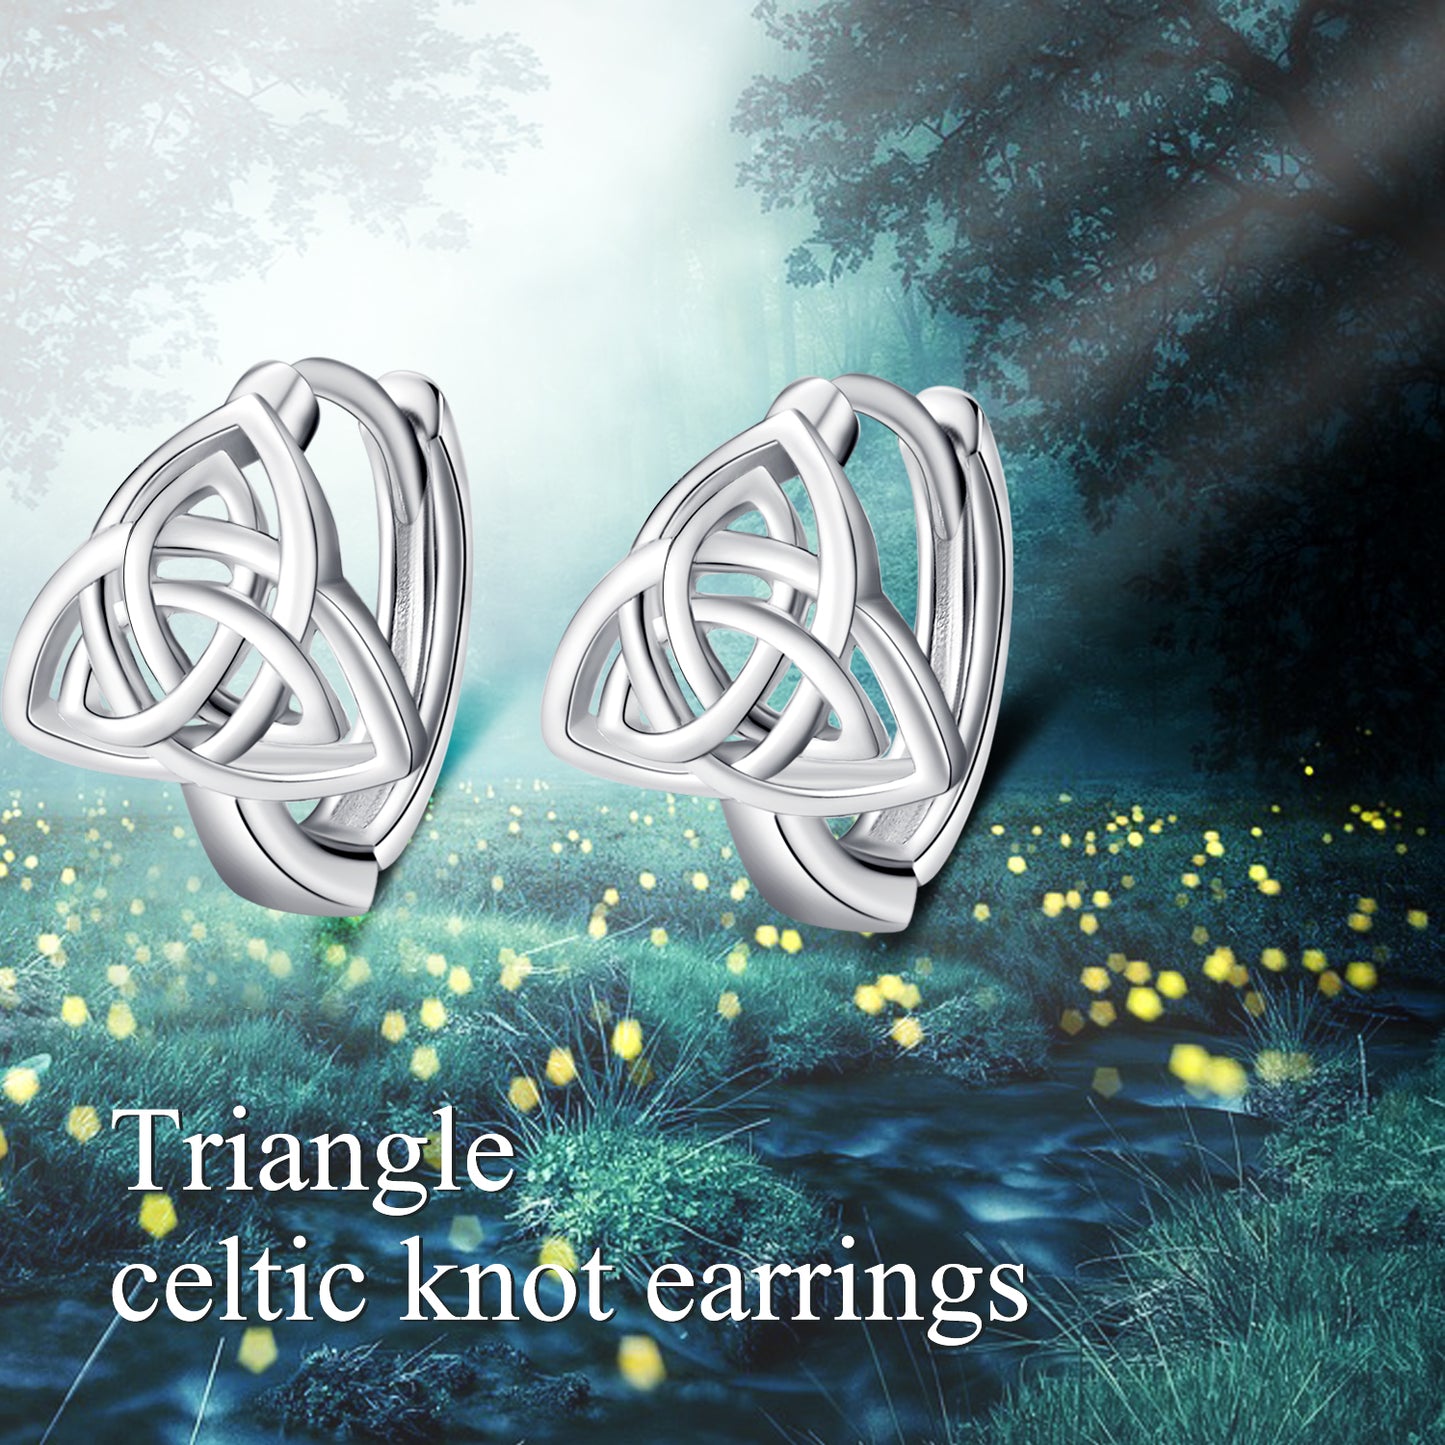 Sterling Silver Lucky Irish Celtic Knot Hoop Earrings - Niki Ice Jewelry 